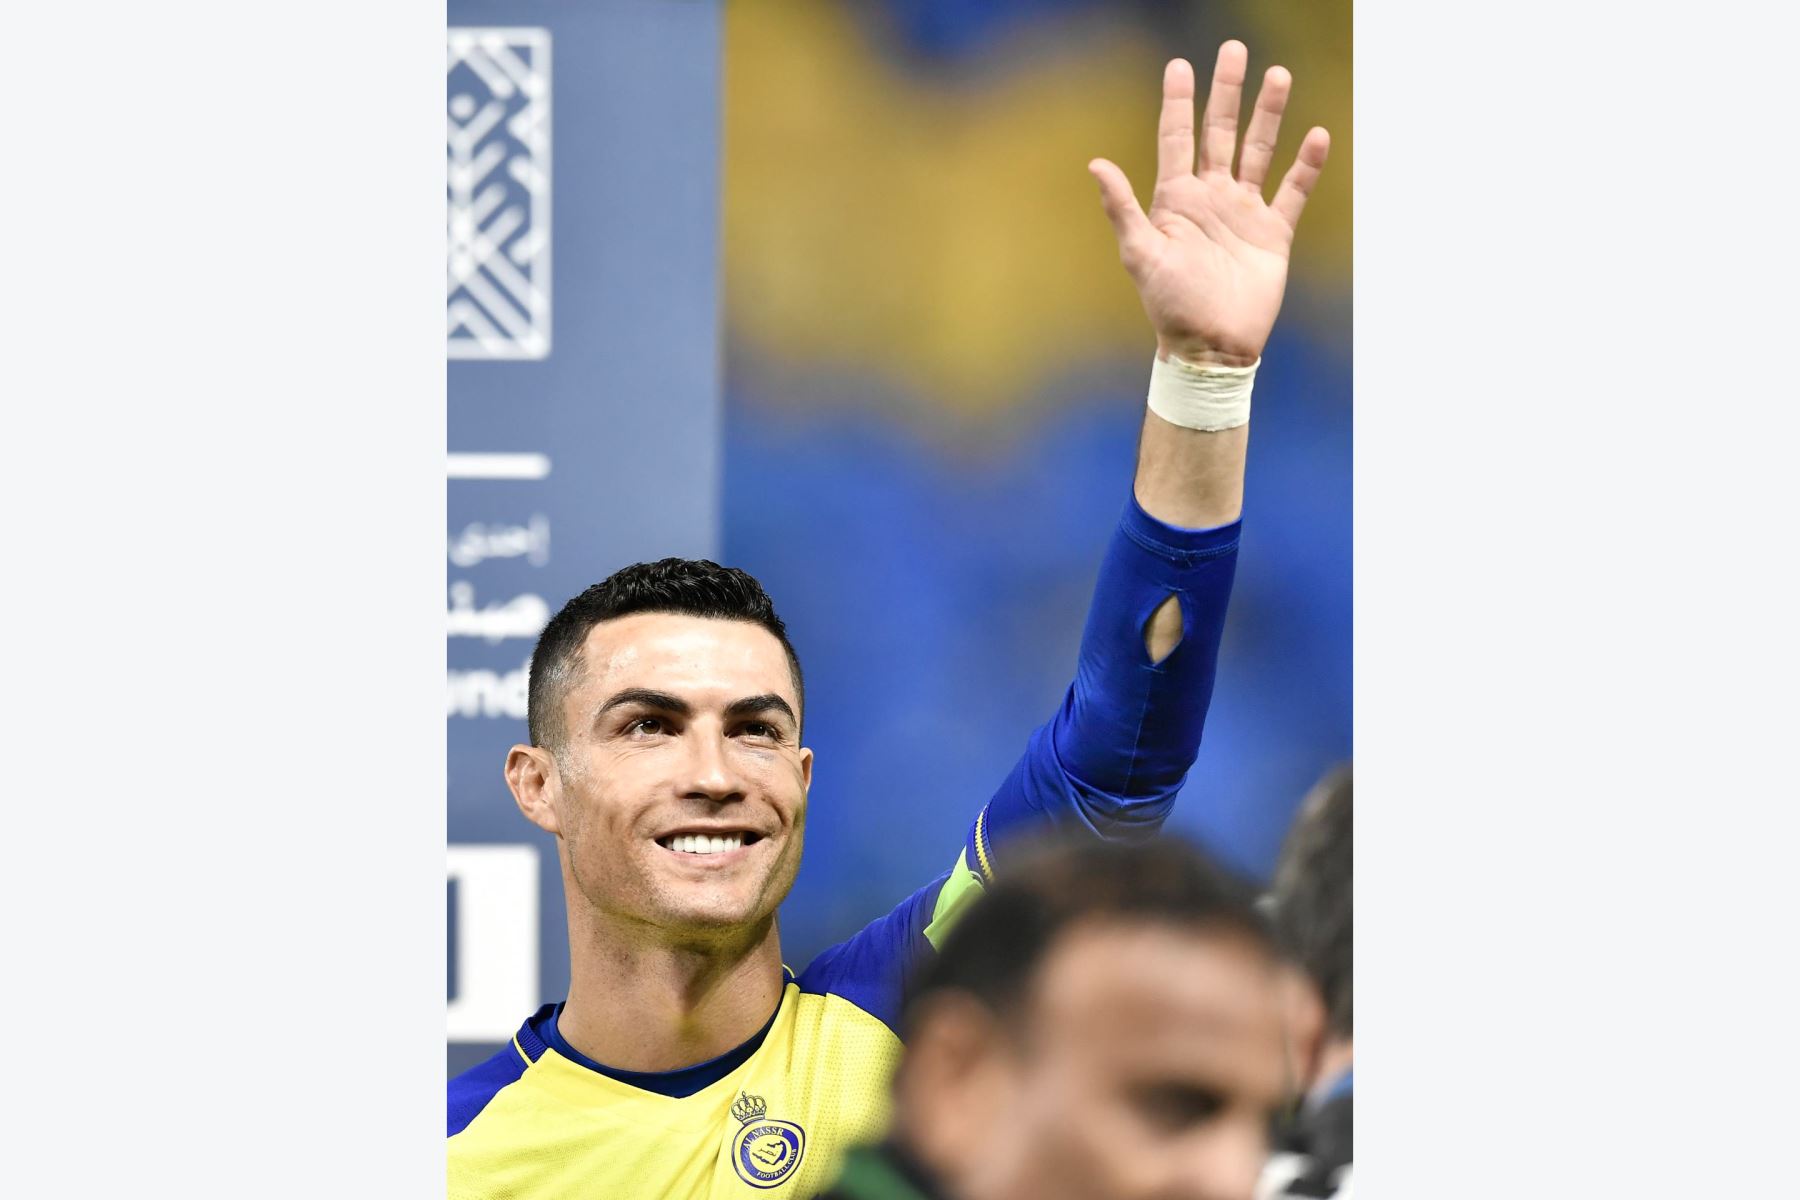 Cristiano Ronaldo de Al Nassr saluda antes del partido de fútbol de la Saudi Pro League entre Al-Nassr y Al Ettifaq en Riyadh, Arabia Saudita, el 22 de enero de 2023.
Foto:EFE